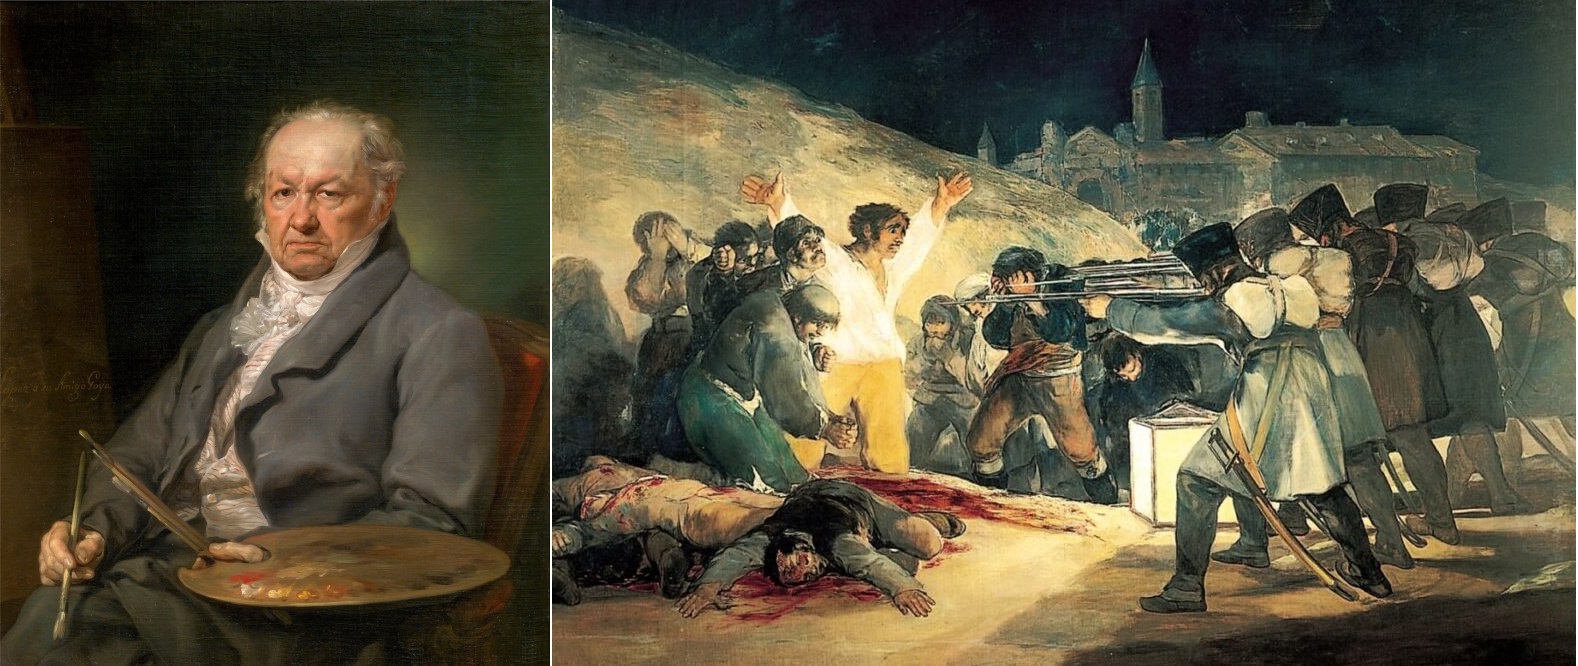 Vicente Lopez Portana el pintor Francisco de Goya